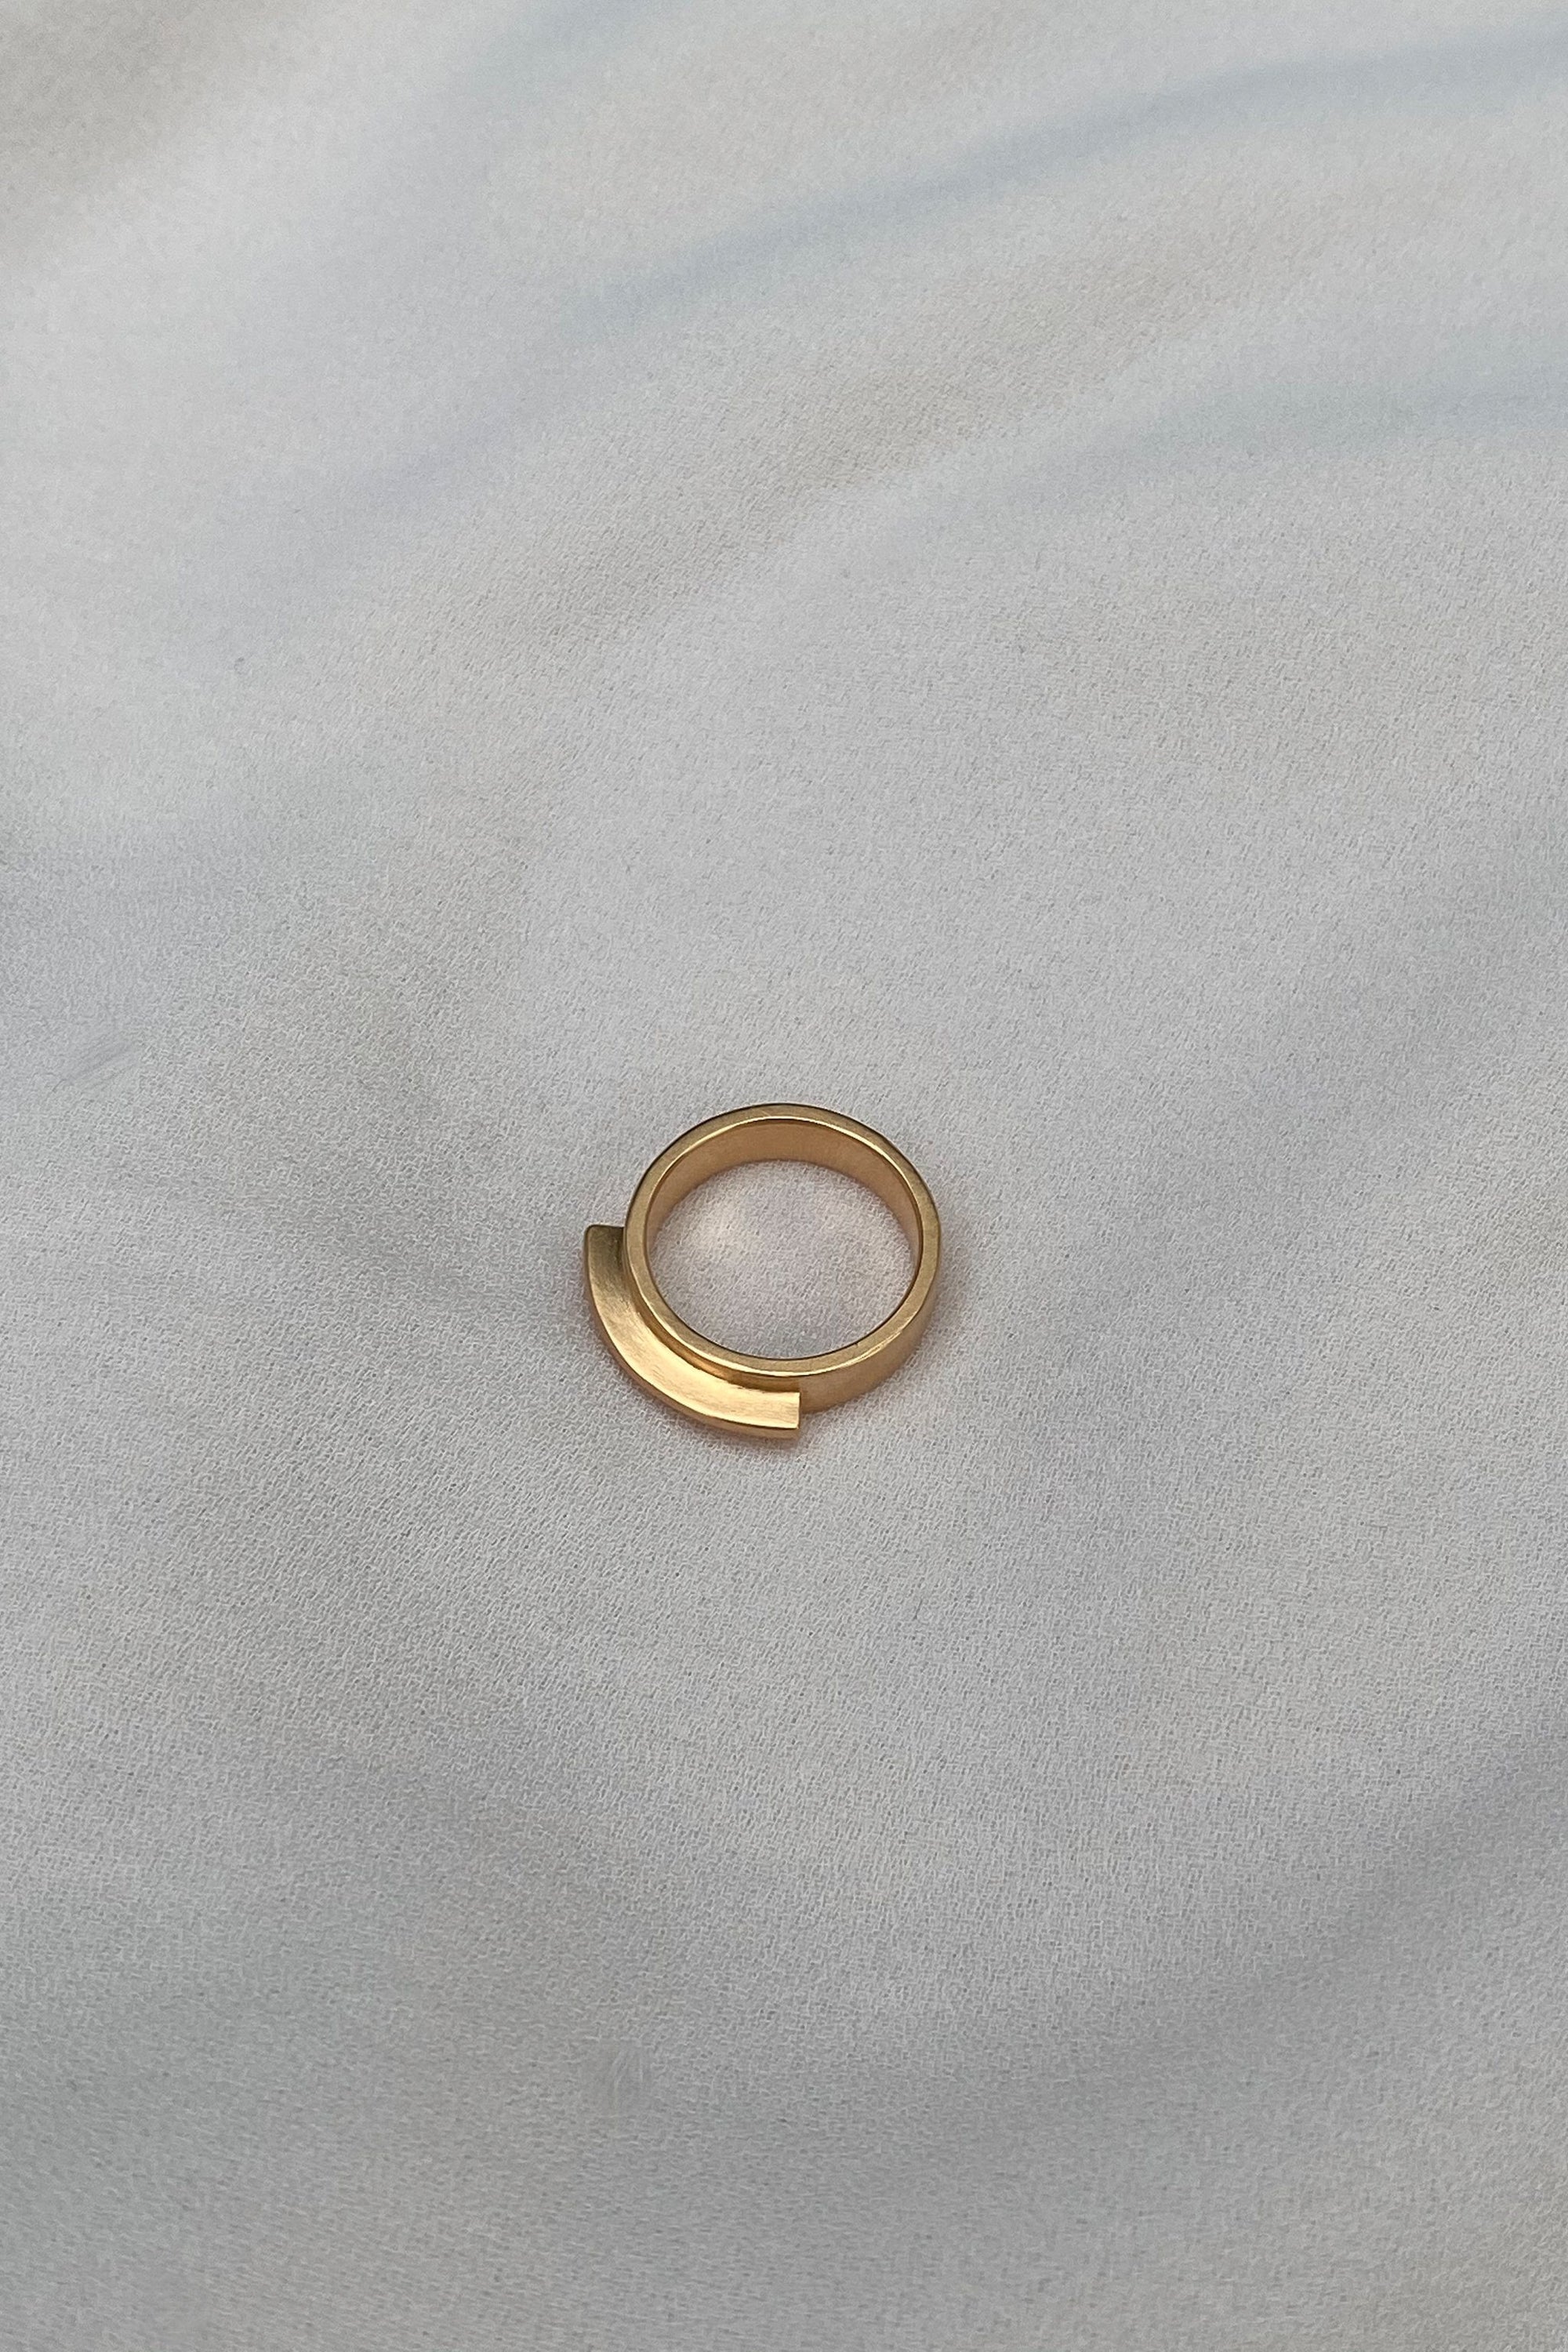 BAIUSHKI SOLEY ring